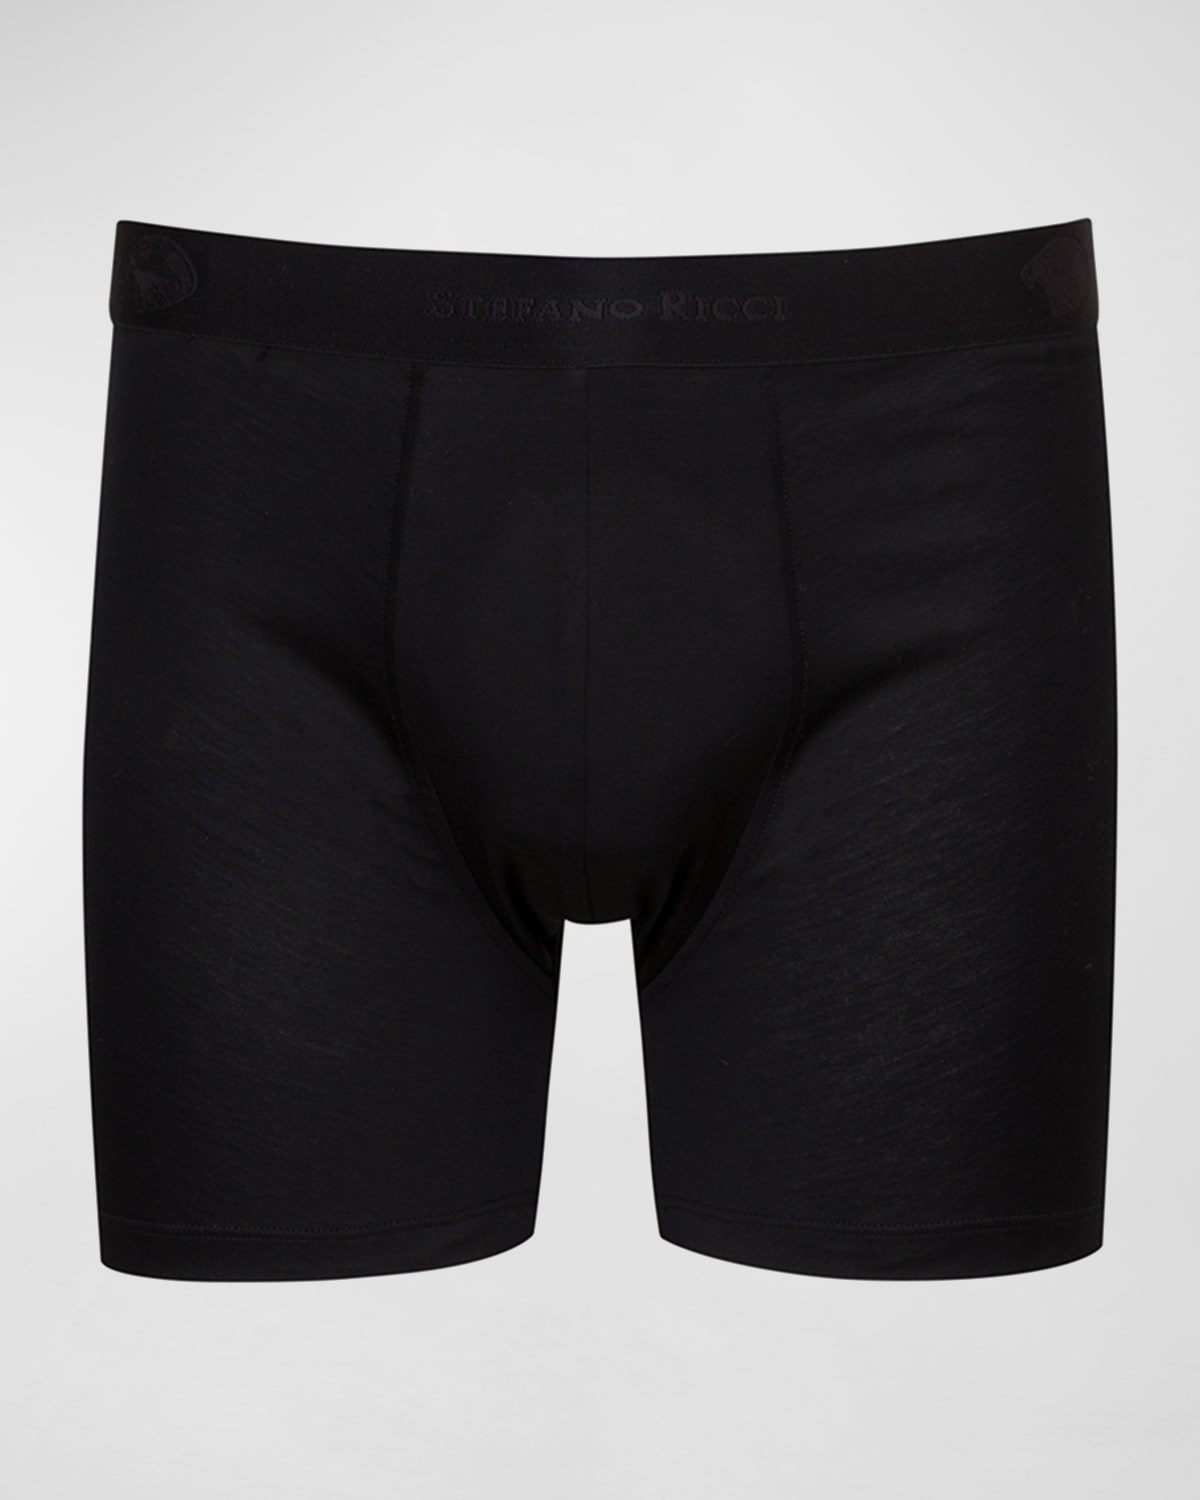 Boxer Briefs Underwear | Neiman Marcus